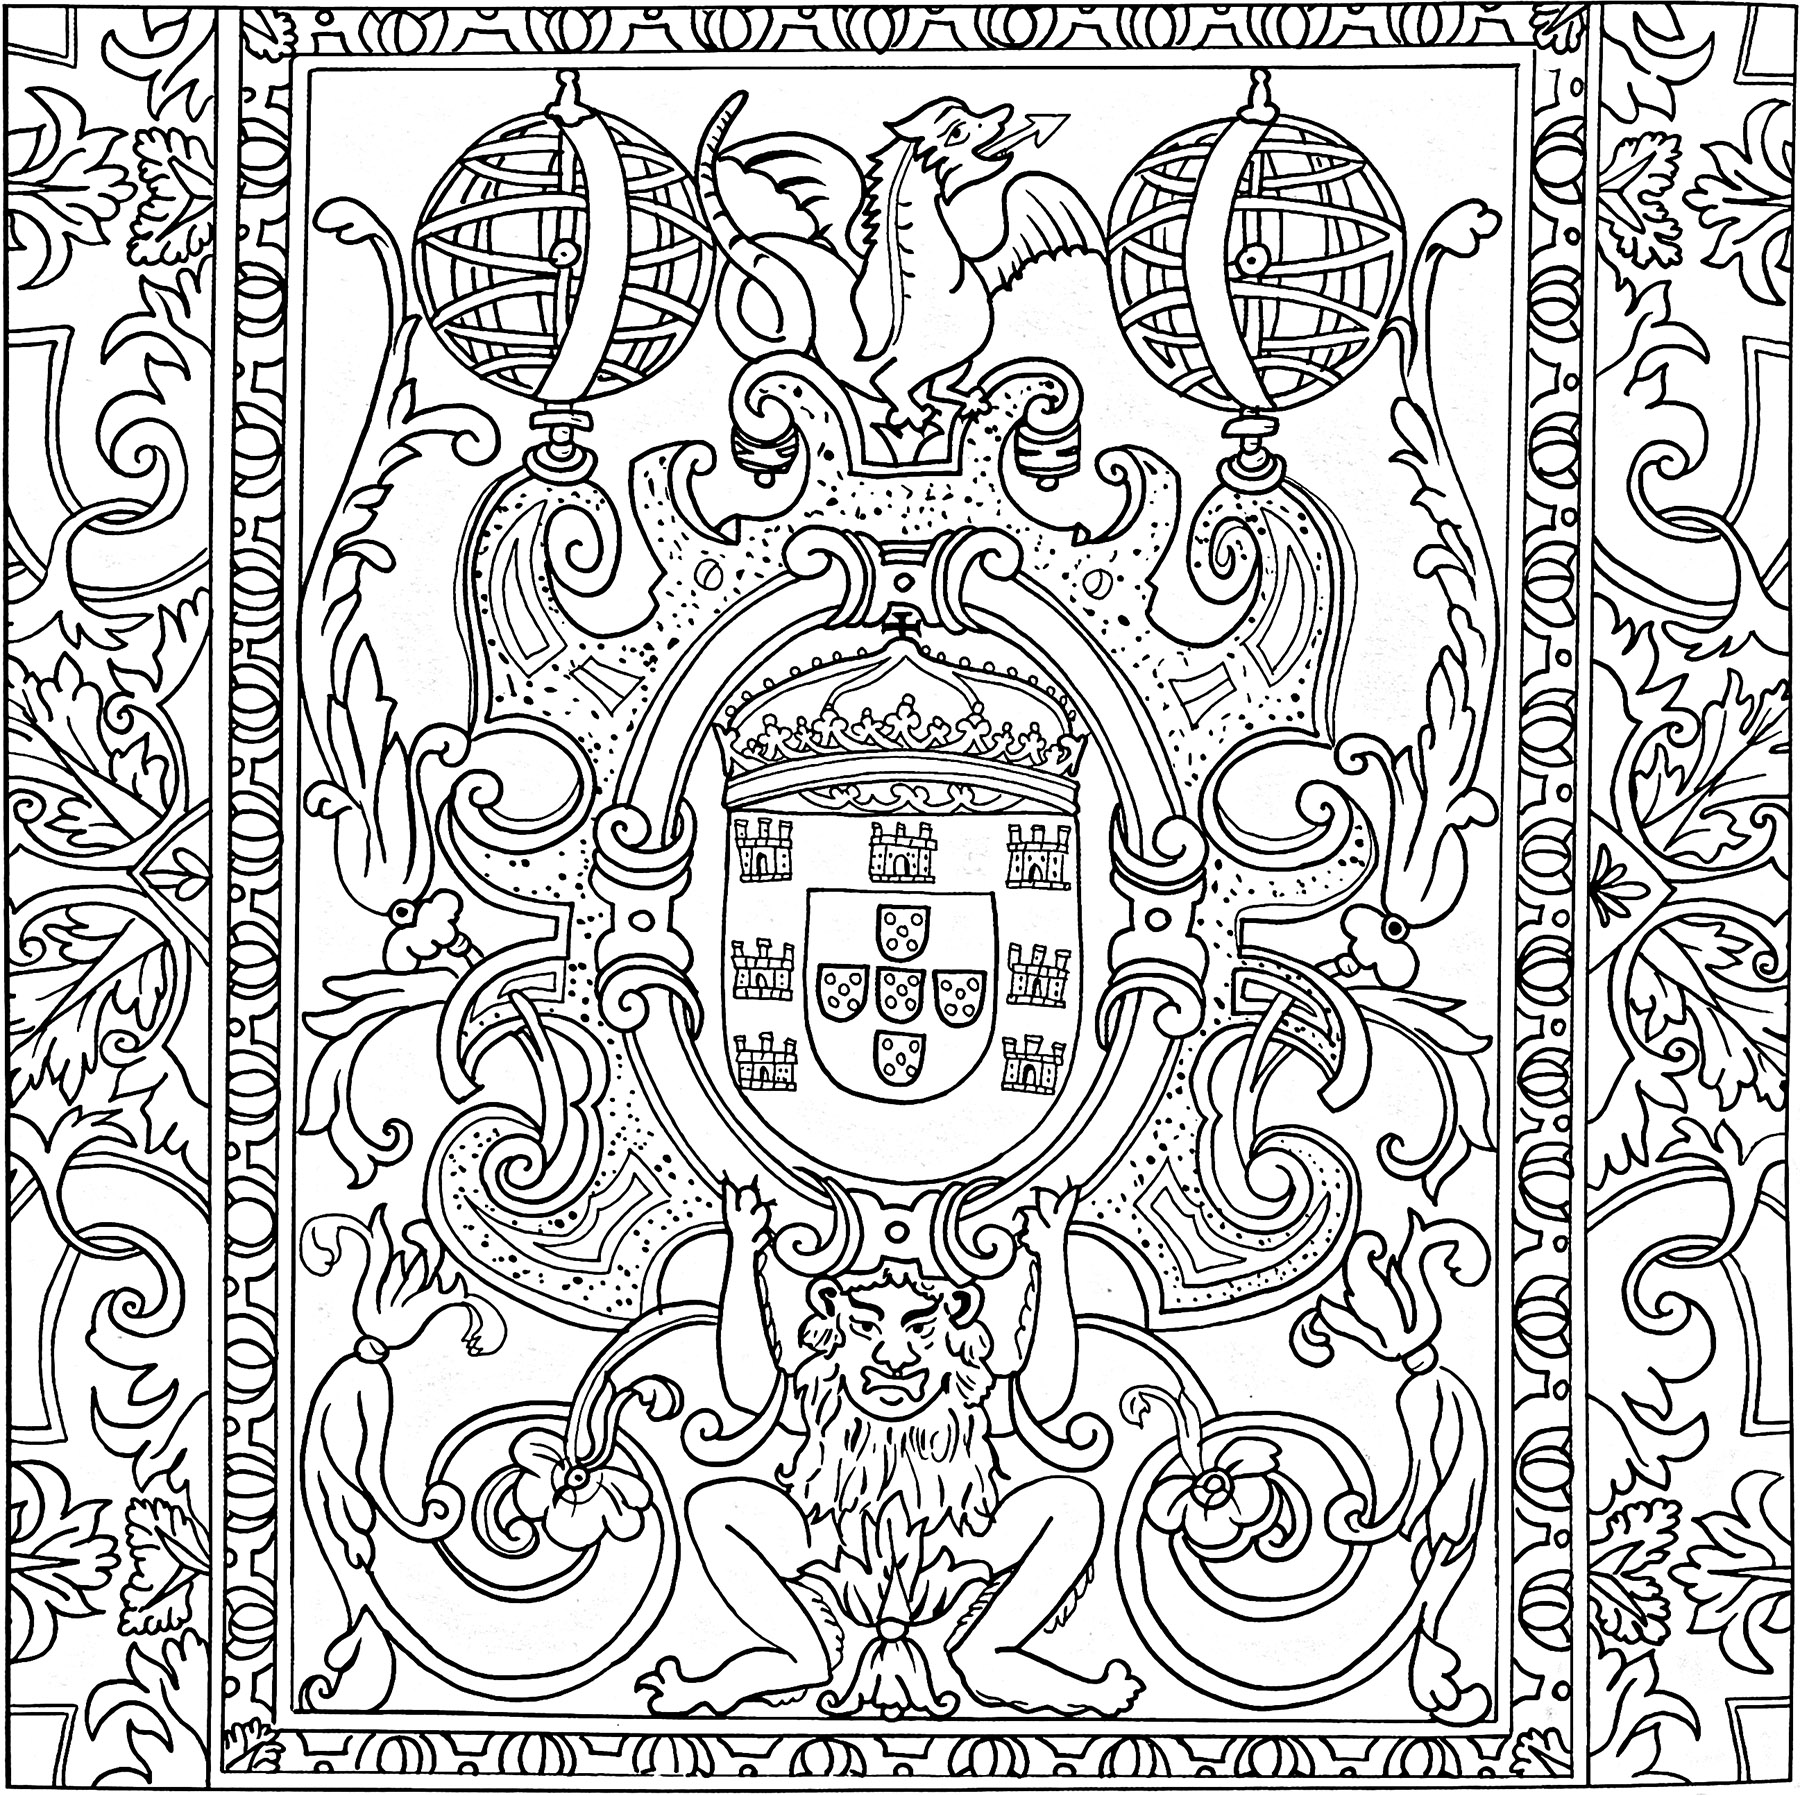 17th-century azulejo (Sintra, Portugal). Esta coloração foi criada a partir de um azulejo existente no Palácio Nacional da Pena, em Sintra, Portugal. Data do século XVII.